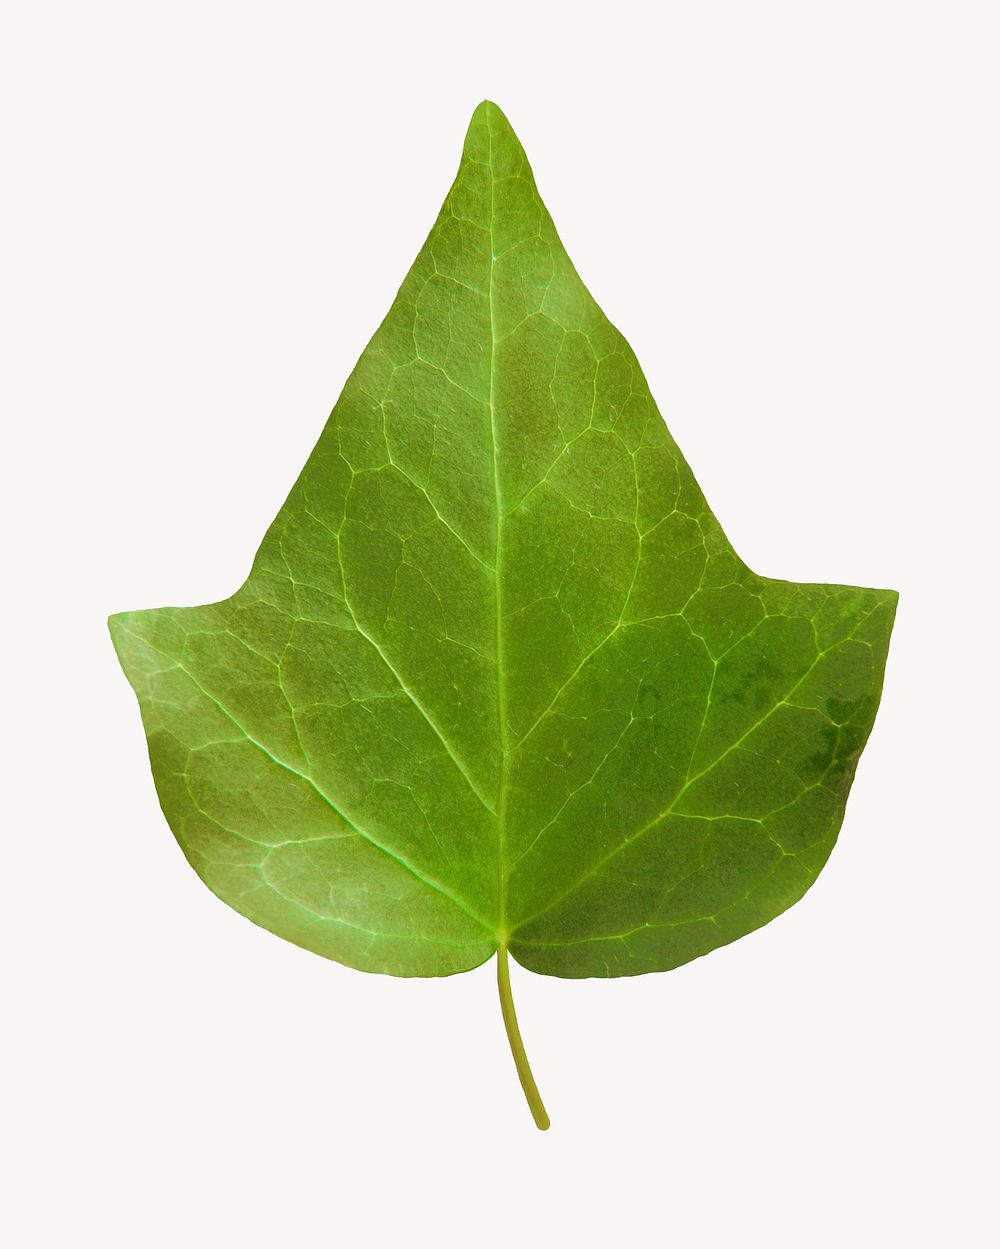 Ivy leaf, plant, isolated botanical image